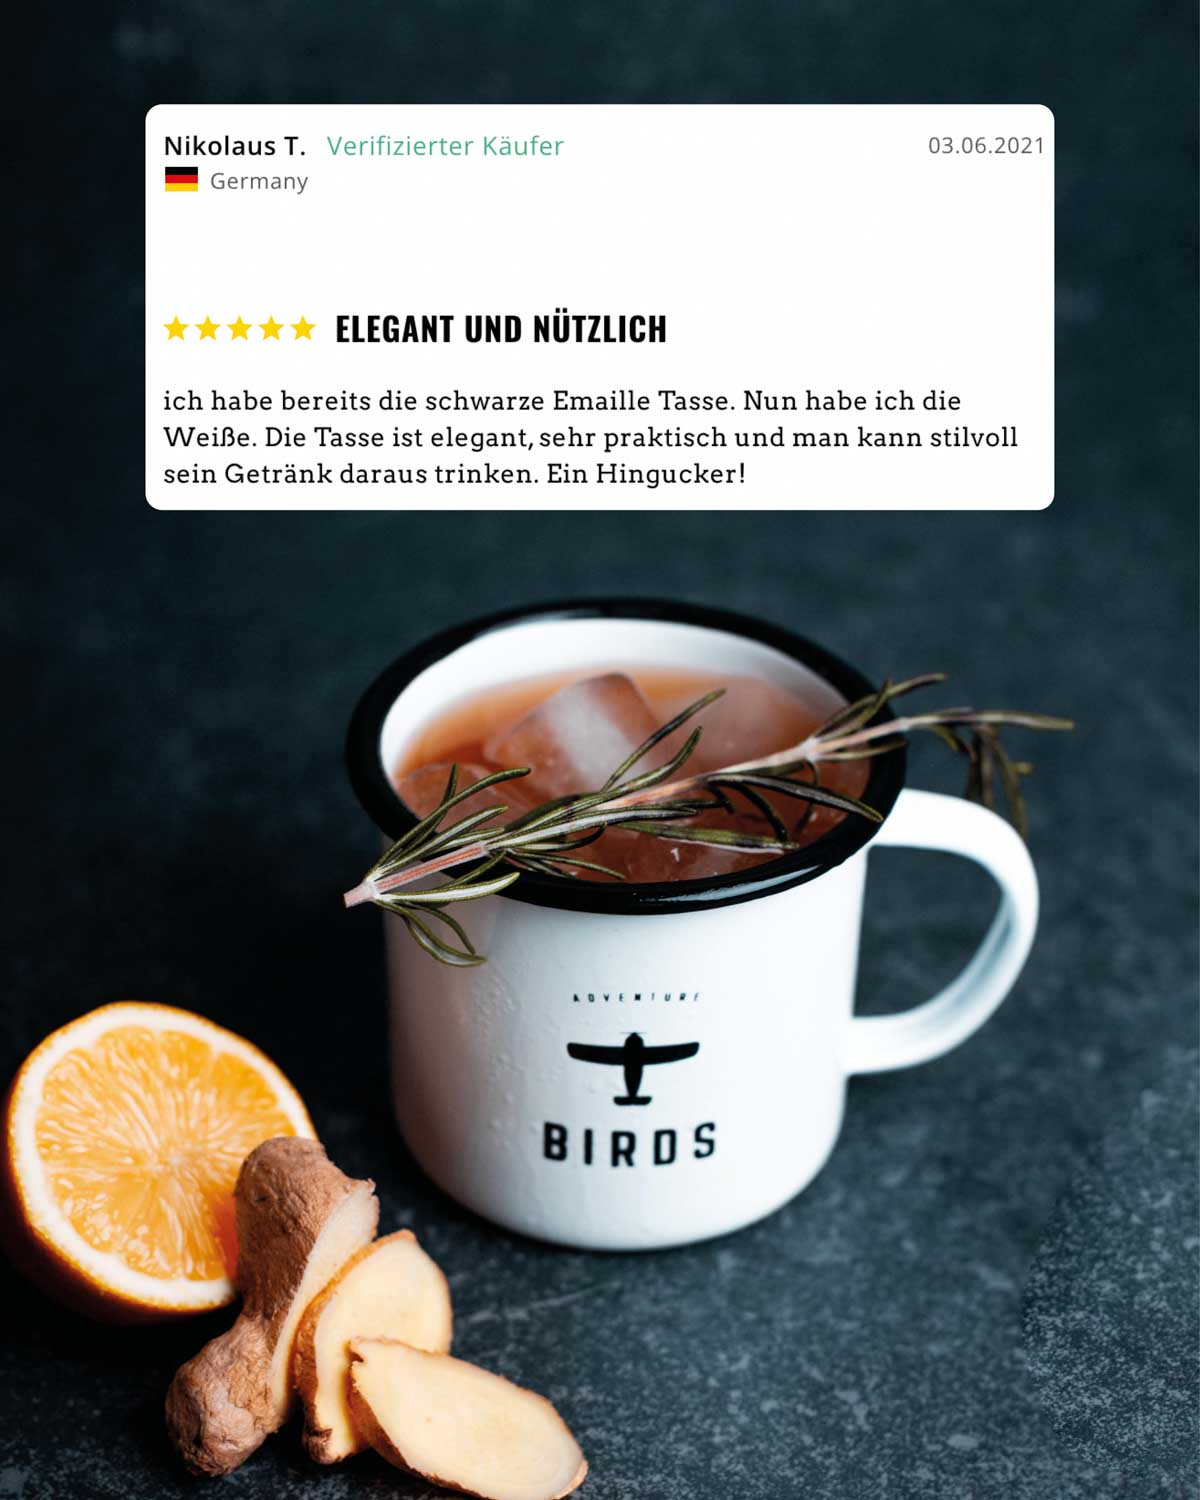 Eine BIRDS Tasse mit einem leckerem Cocktail, daneben liegt eine Orange und Ingwer, darüber steht eine verifizierte Kundenbewertung. Der Käufer beschreibt die Tasse als elegant und nützlich.